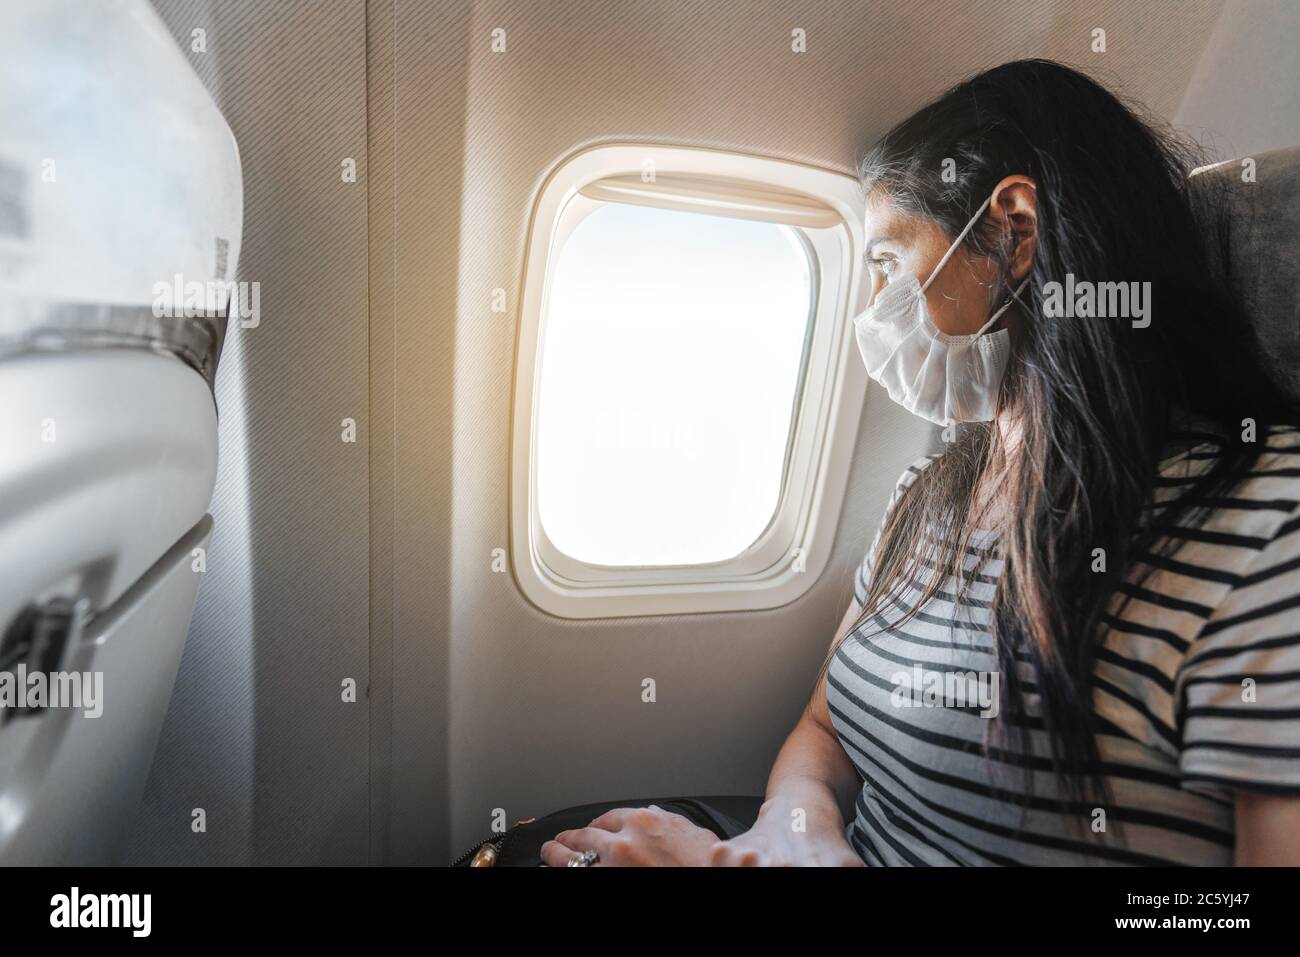 Une jeune femme avec un masque de protection est assise dans un avion et regarde la vue depuis la fenêtre. Virus Corona en rupture. Photo de haute qualité Banque D'Images